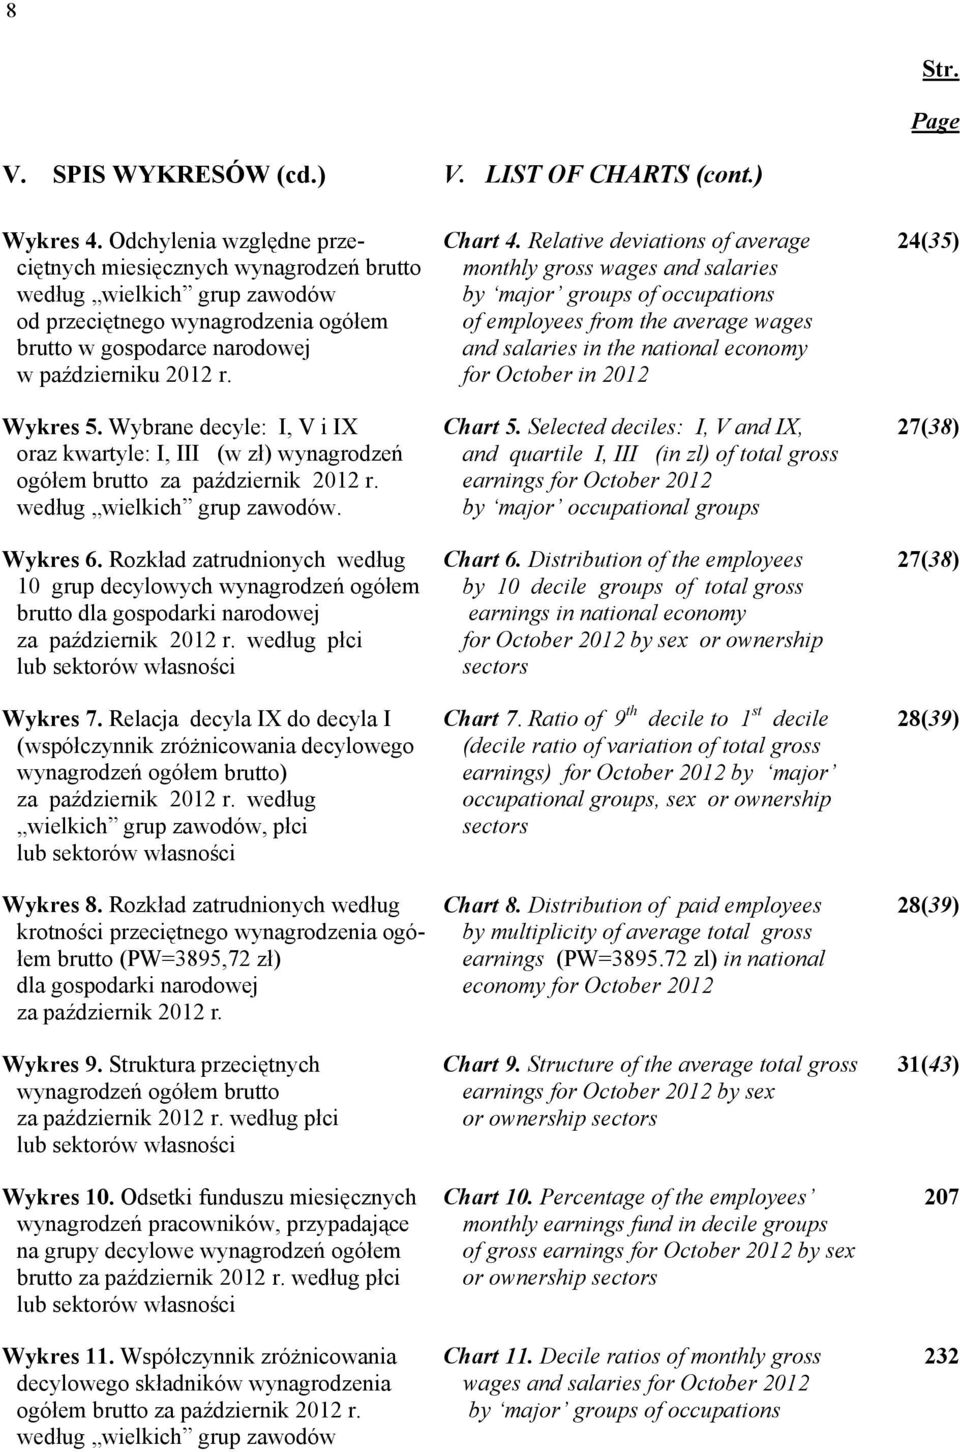 Wybrane decyle: I, V i IX oraz kwartyle: I, III (w zł) wynagrodzeń ogółem brutto za październik 2012 r. według wielkich grup zawodów. Wykres 6.